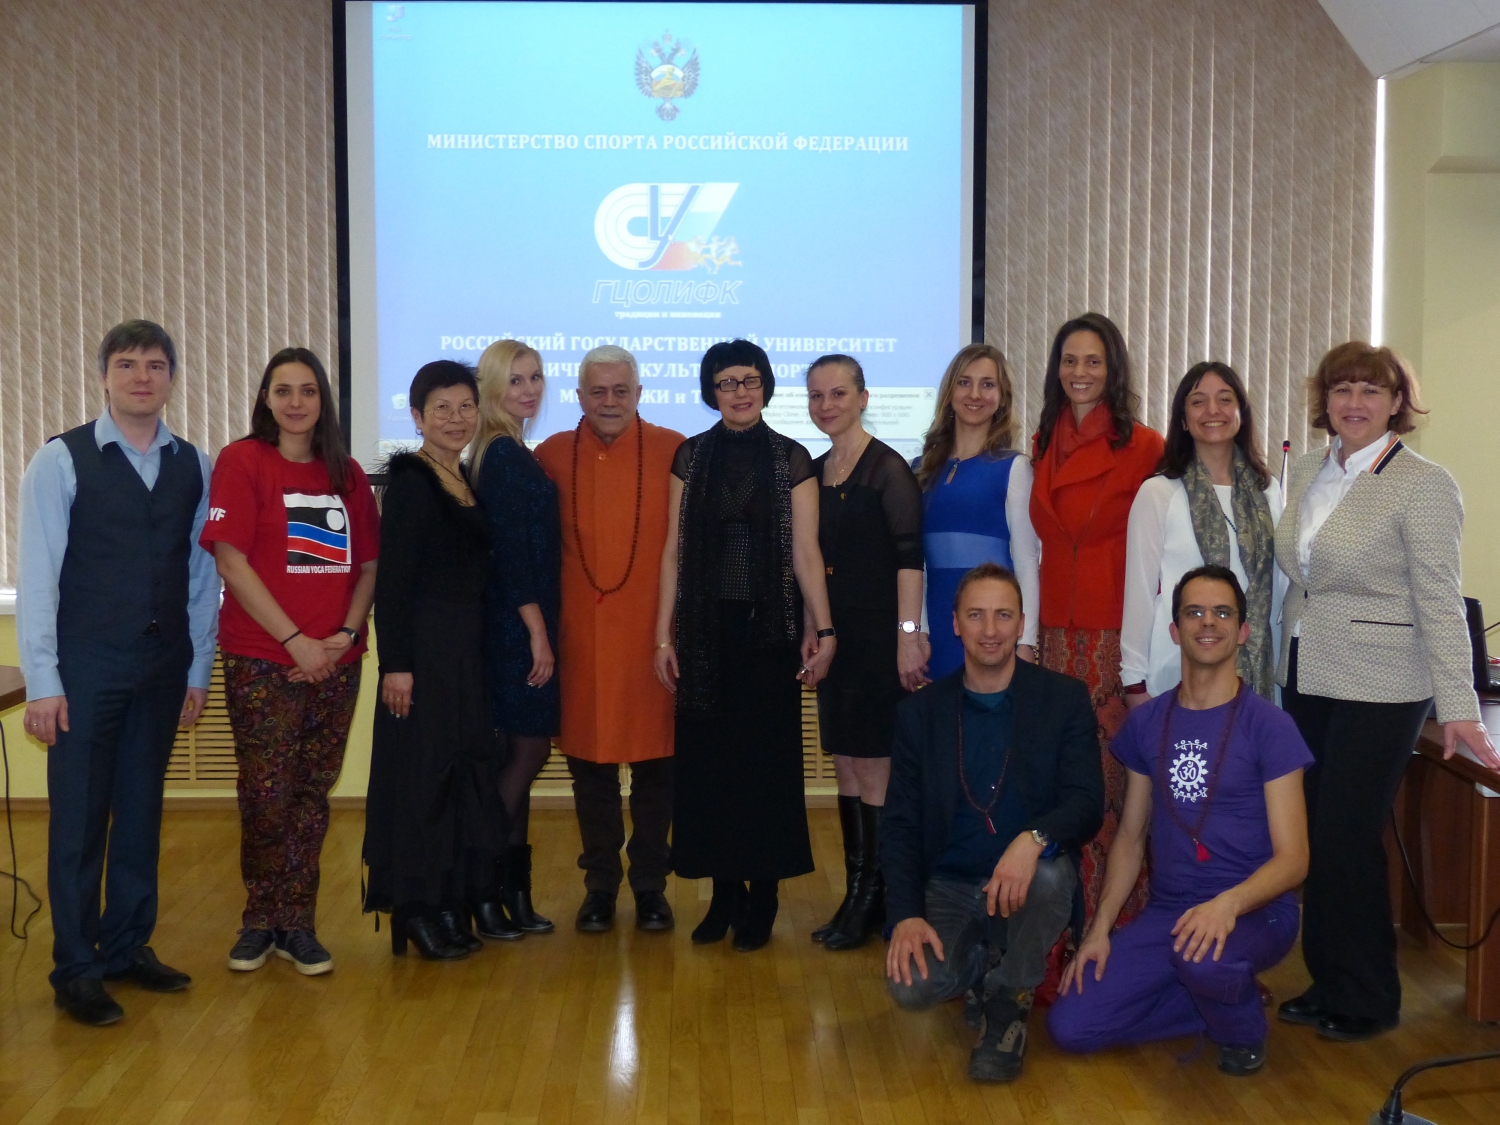 Curso de Aumento de Qualificação em Yoga aos Professores da Federação Russa do Yoga dado por H.H. Jagat Guru Amrta Súryánanda Mahá Rája - Rússia - 2016, Março